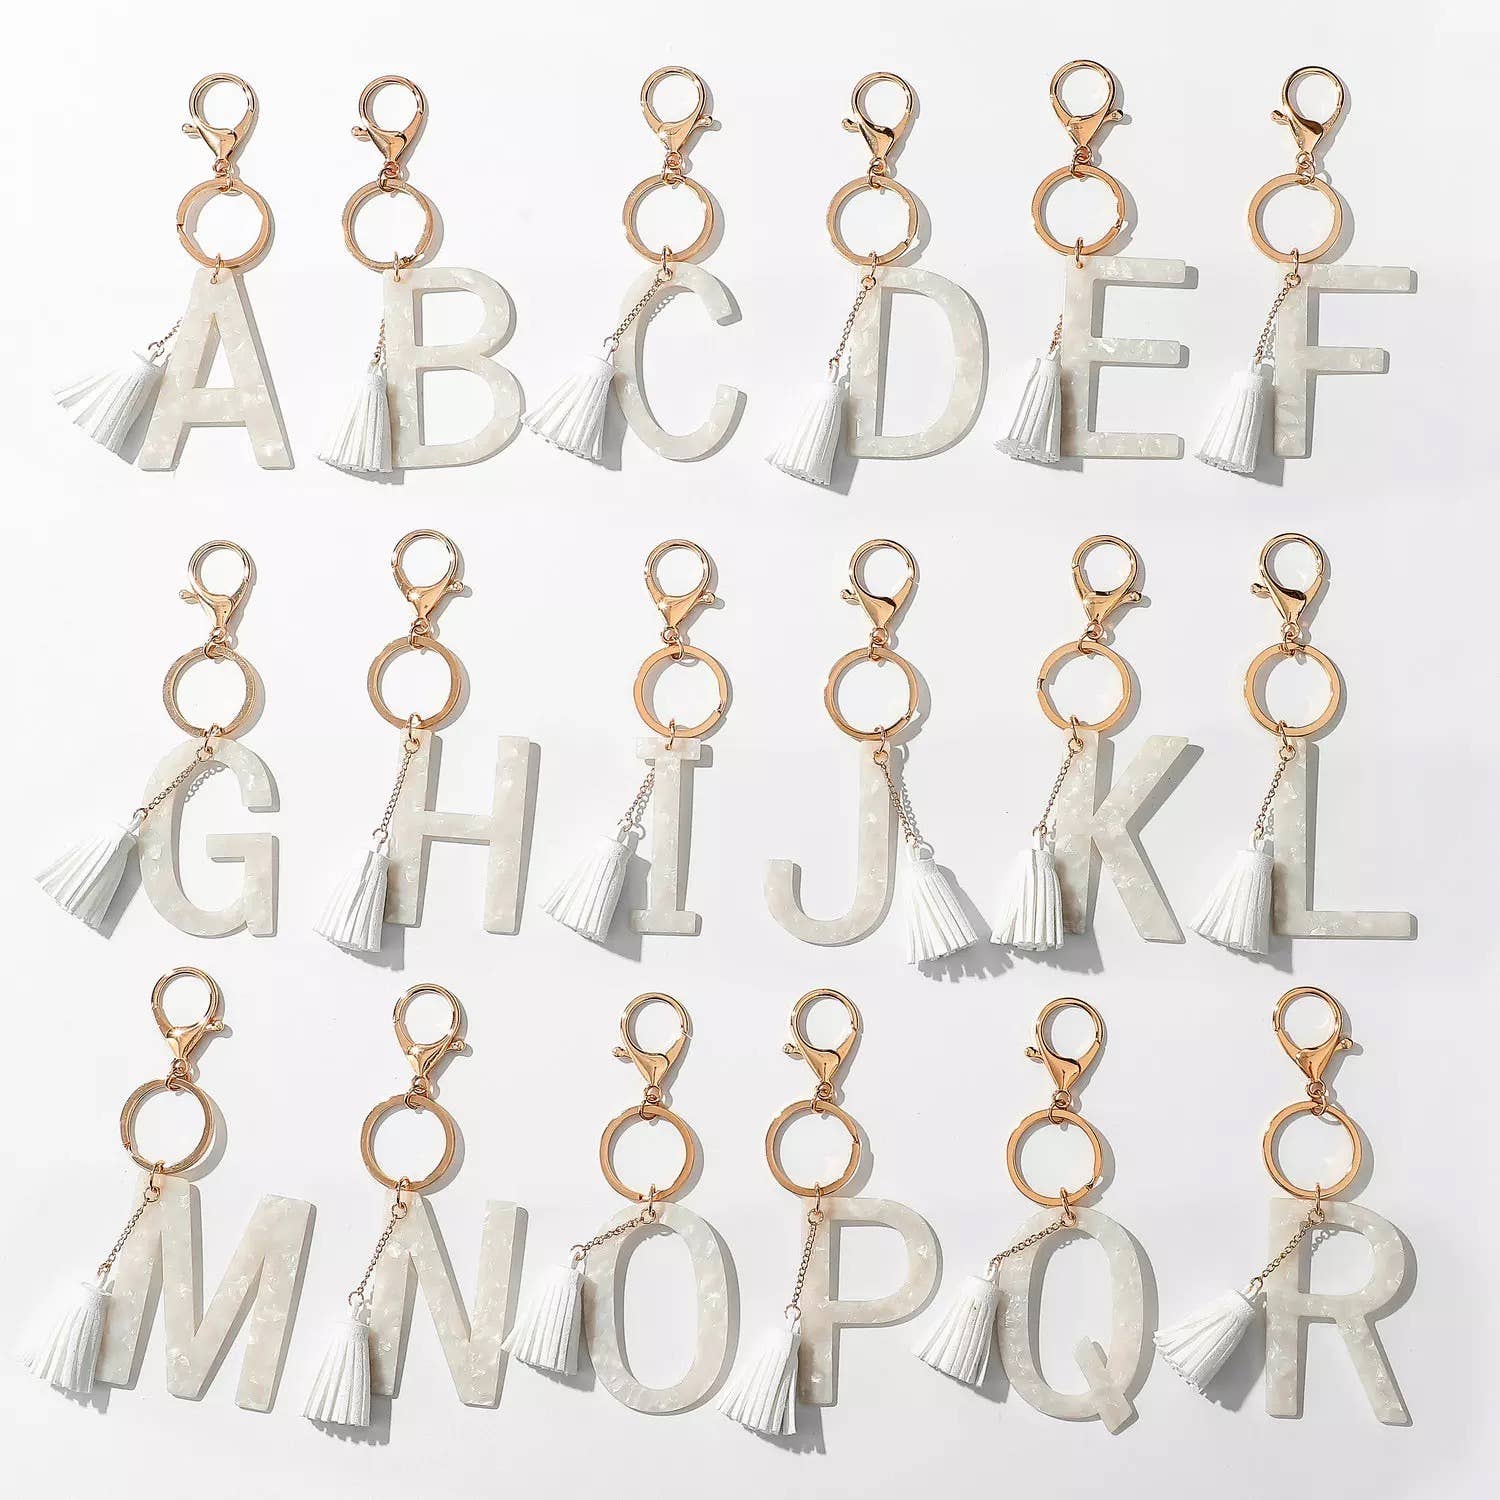 Tasseled Initial Key Chain, White